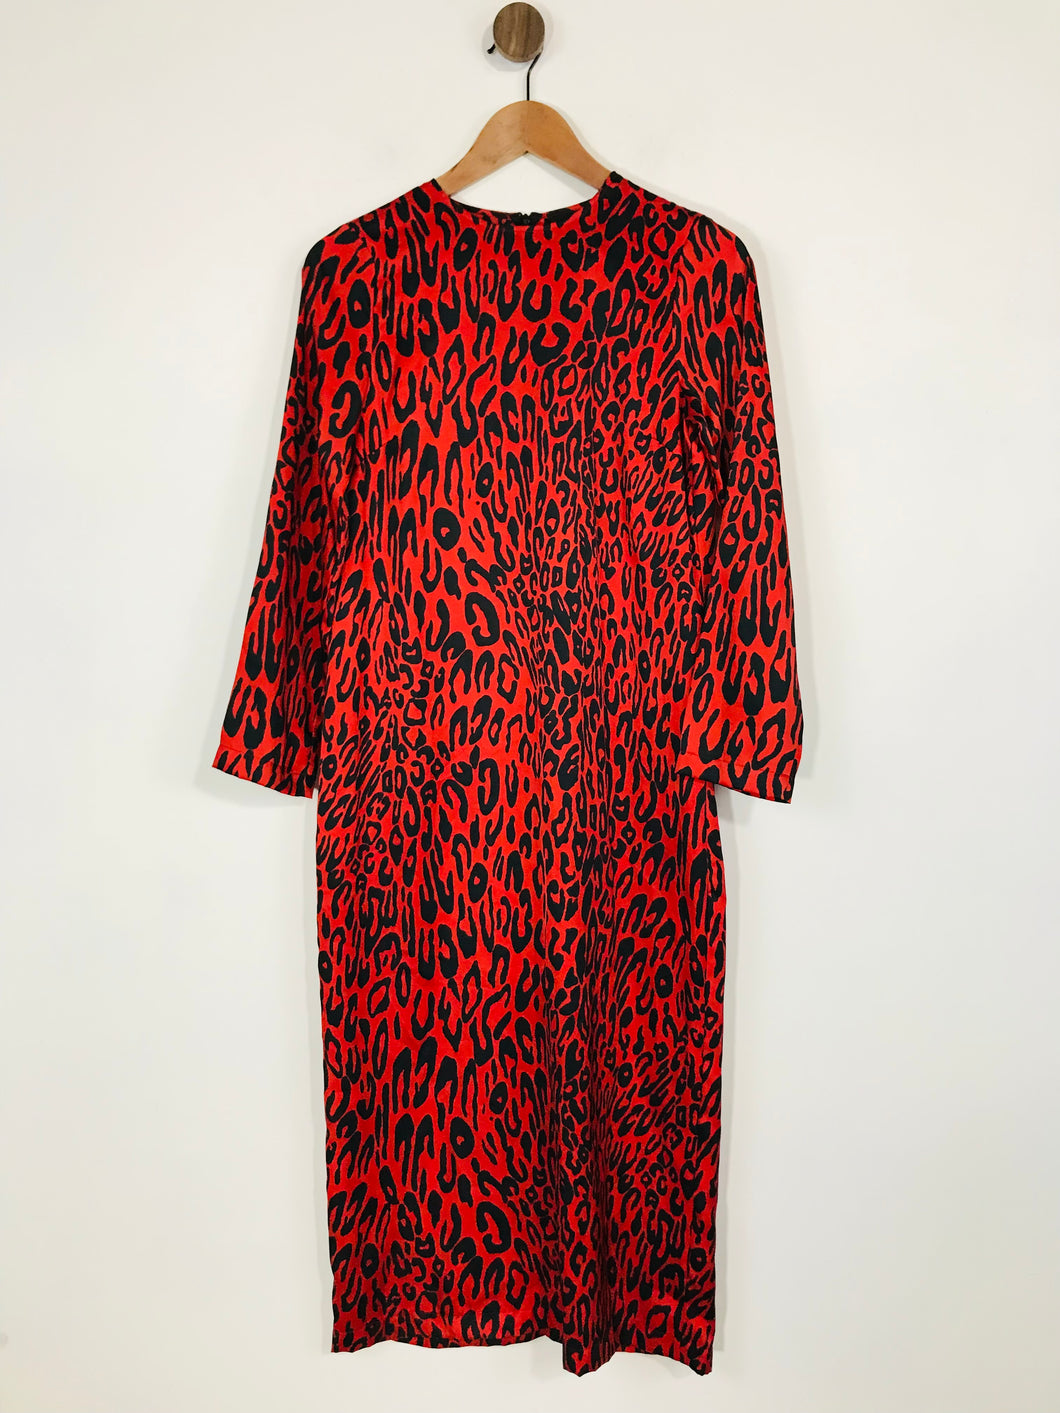 Zara Women's Leopard Print Midi Dress | XS UK6-8 | Red